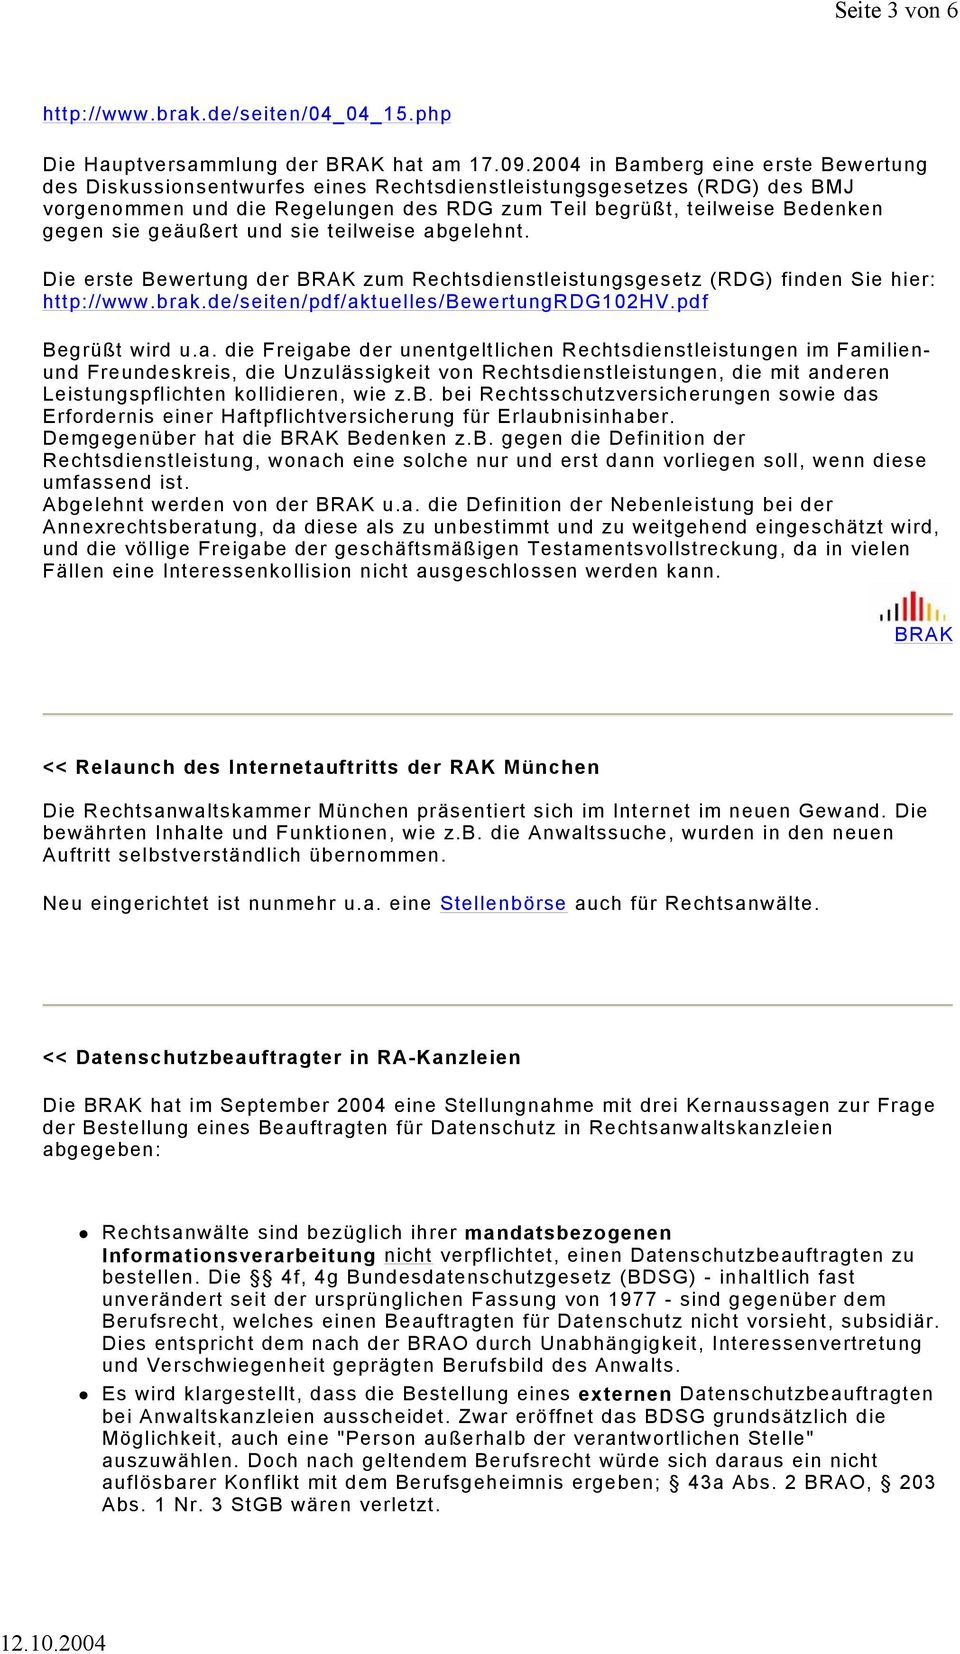 geäußert und sie teilweise abgelehnt. Die erste Bewertung der BRAK zum Rechtsdienstleistungsgesetz (RDG) finden Sie hier: http://www.brak.de/seiten/pdf/aktuelles/bewertungrdg102hv.pdf Begrüßt wird u.